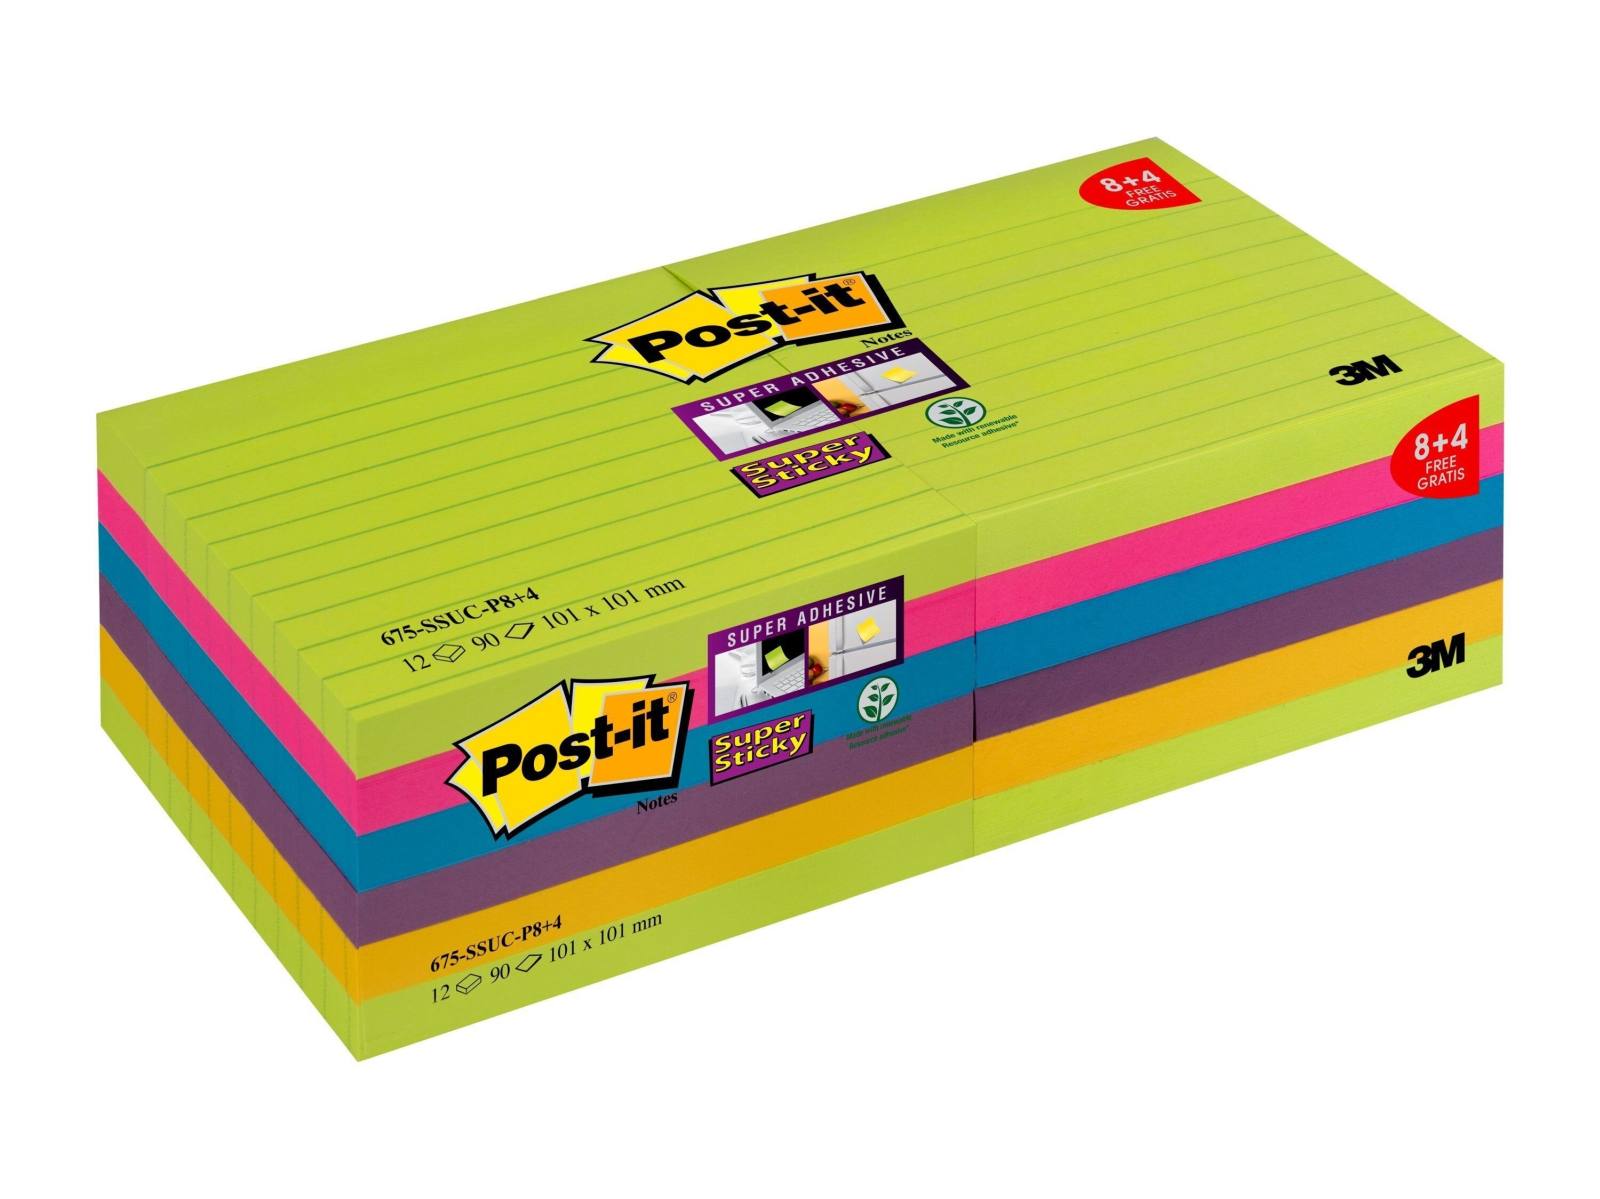 3M Post-it Super Sticky Notes Promoción 675-SSUC-P8+4 12 blocs de 90 hojas cada uno a un precio especial, verde neón, ultra rosa, ultra azul, púrpura ciruela, ultra amarillo, 101 mm x 101 mm, forrado, certificado PEFC